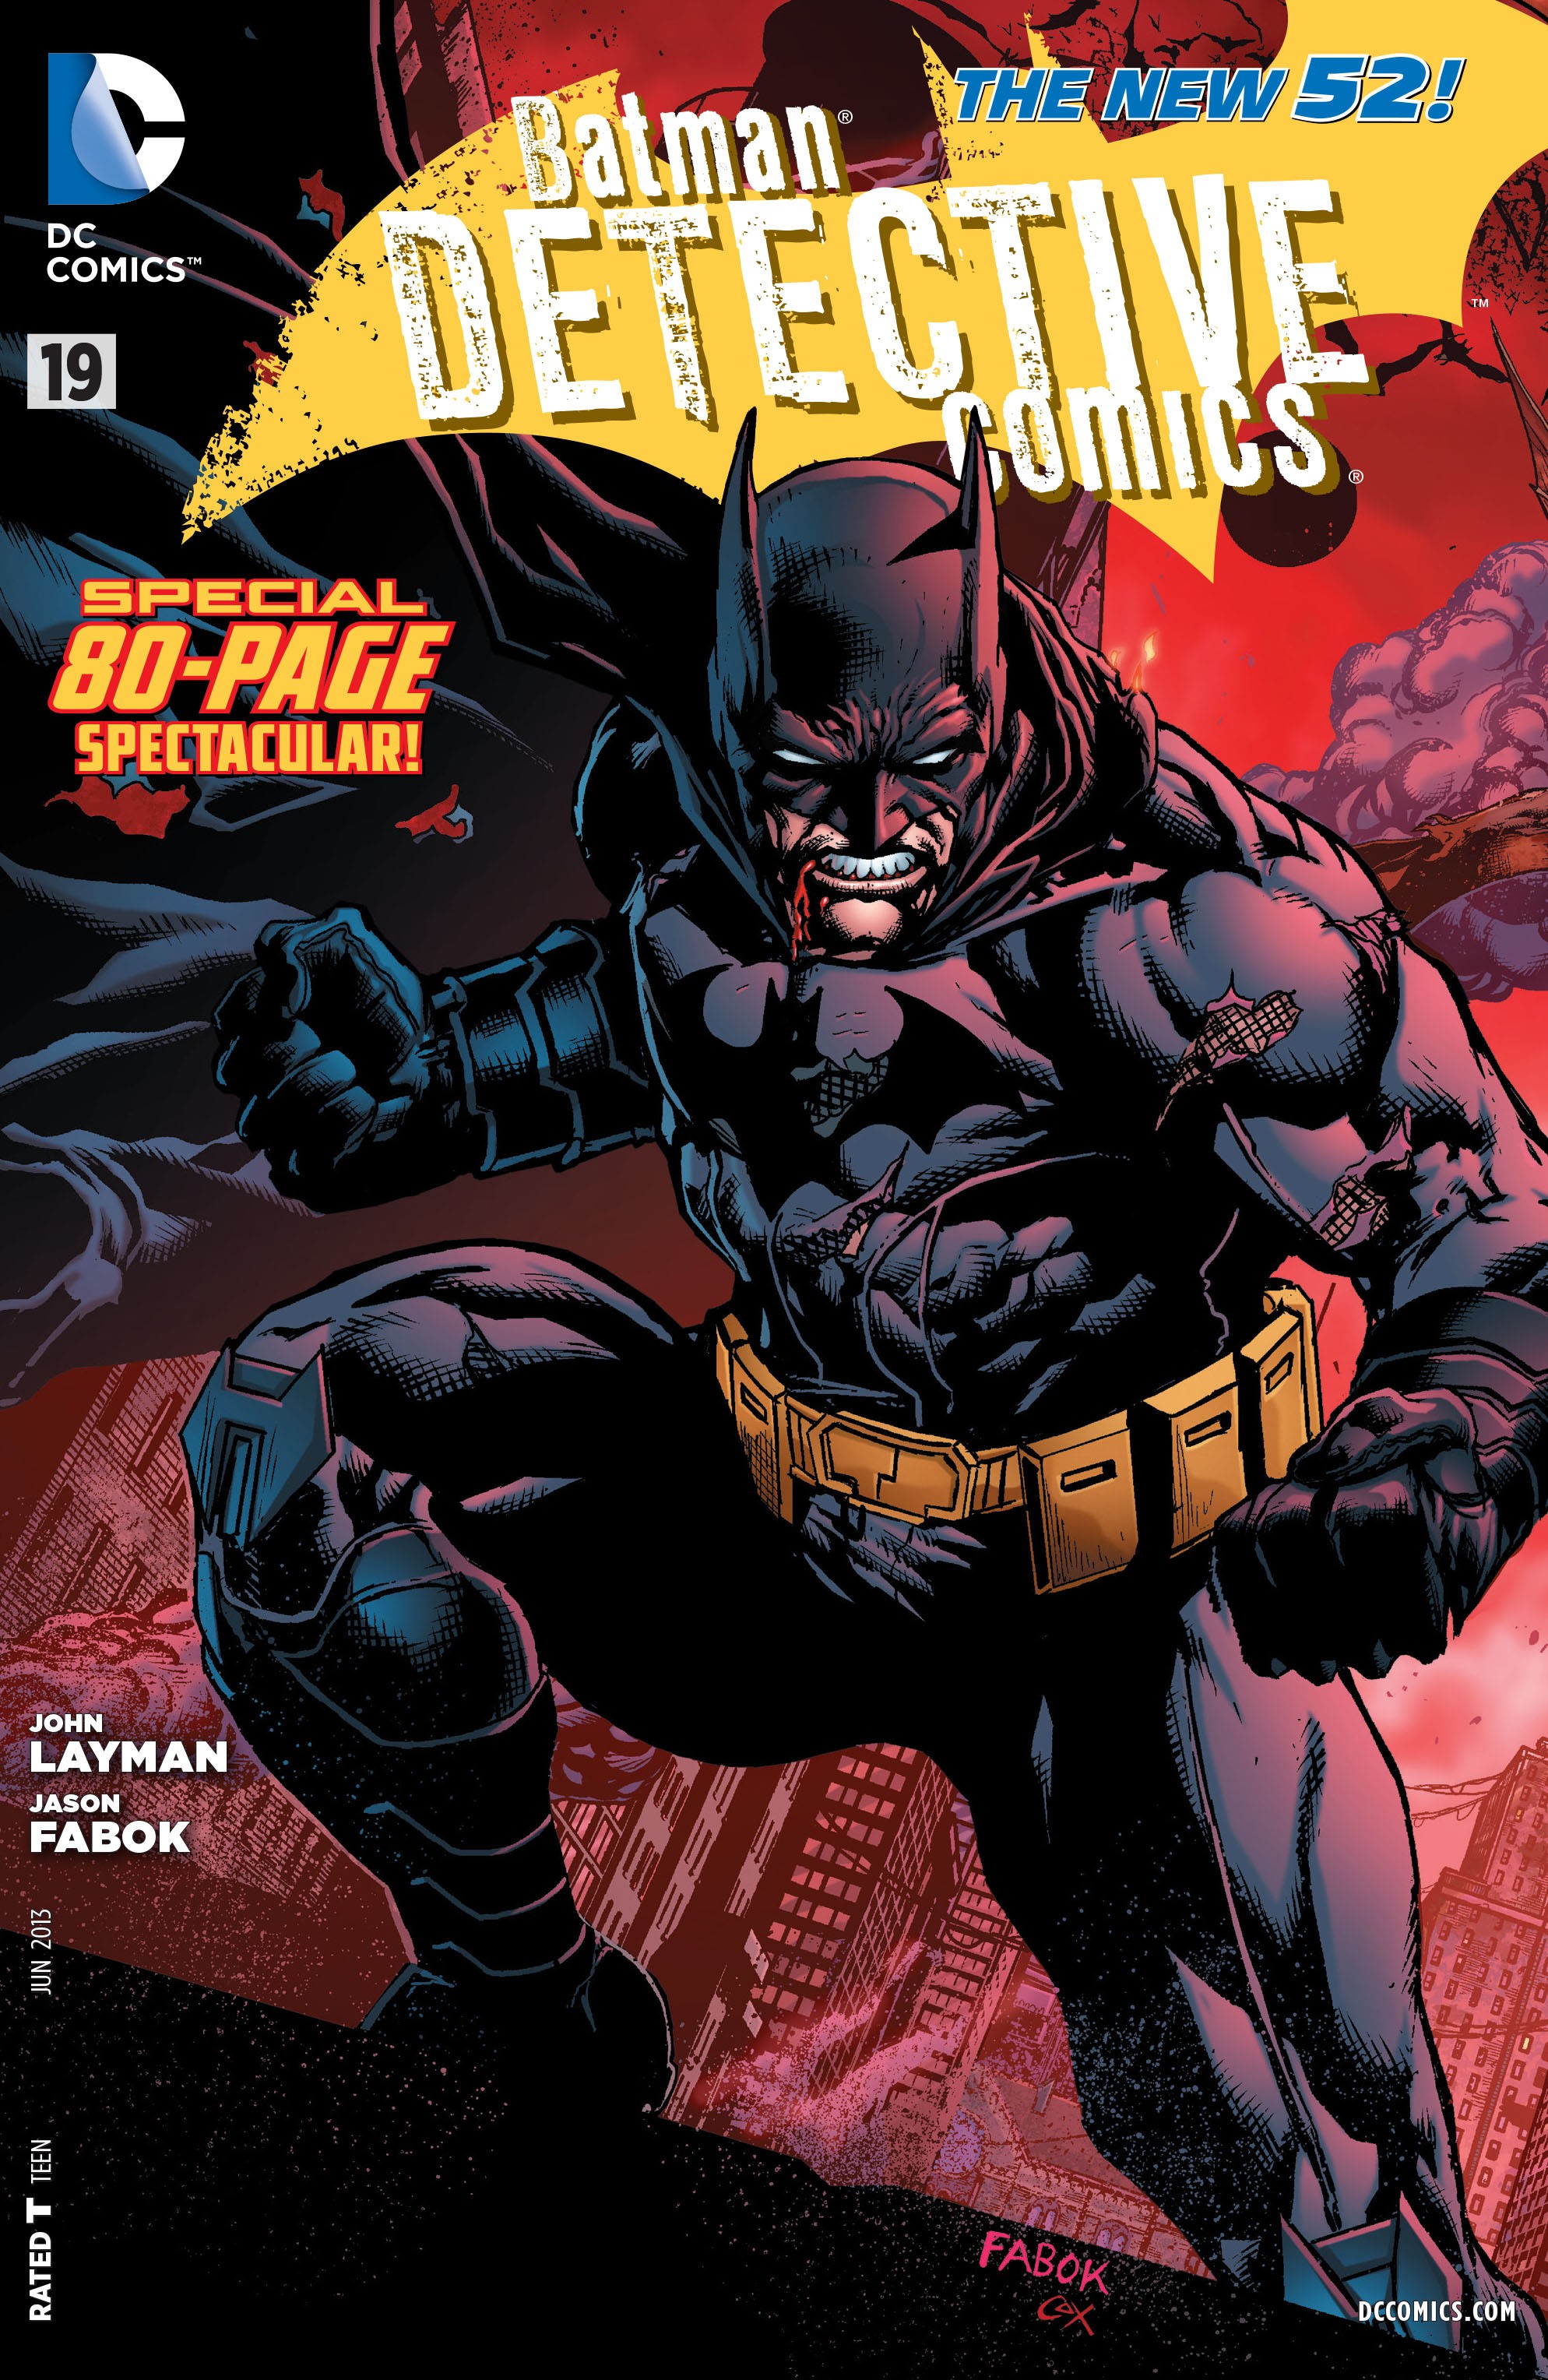 Detective Comics Vol. 2 #19